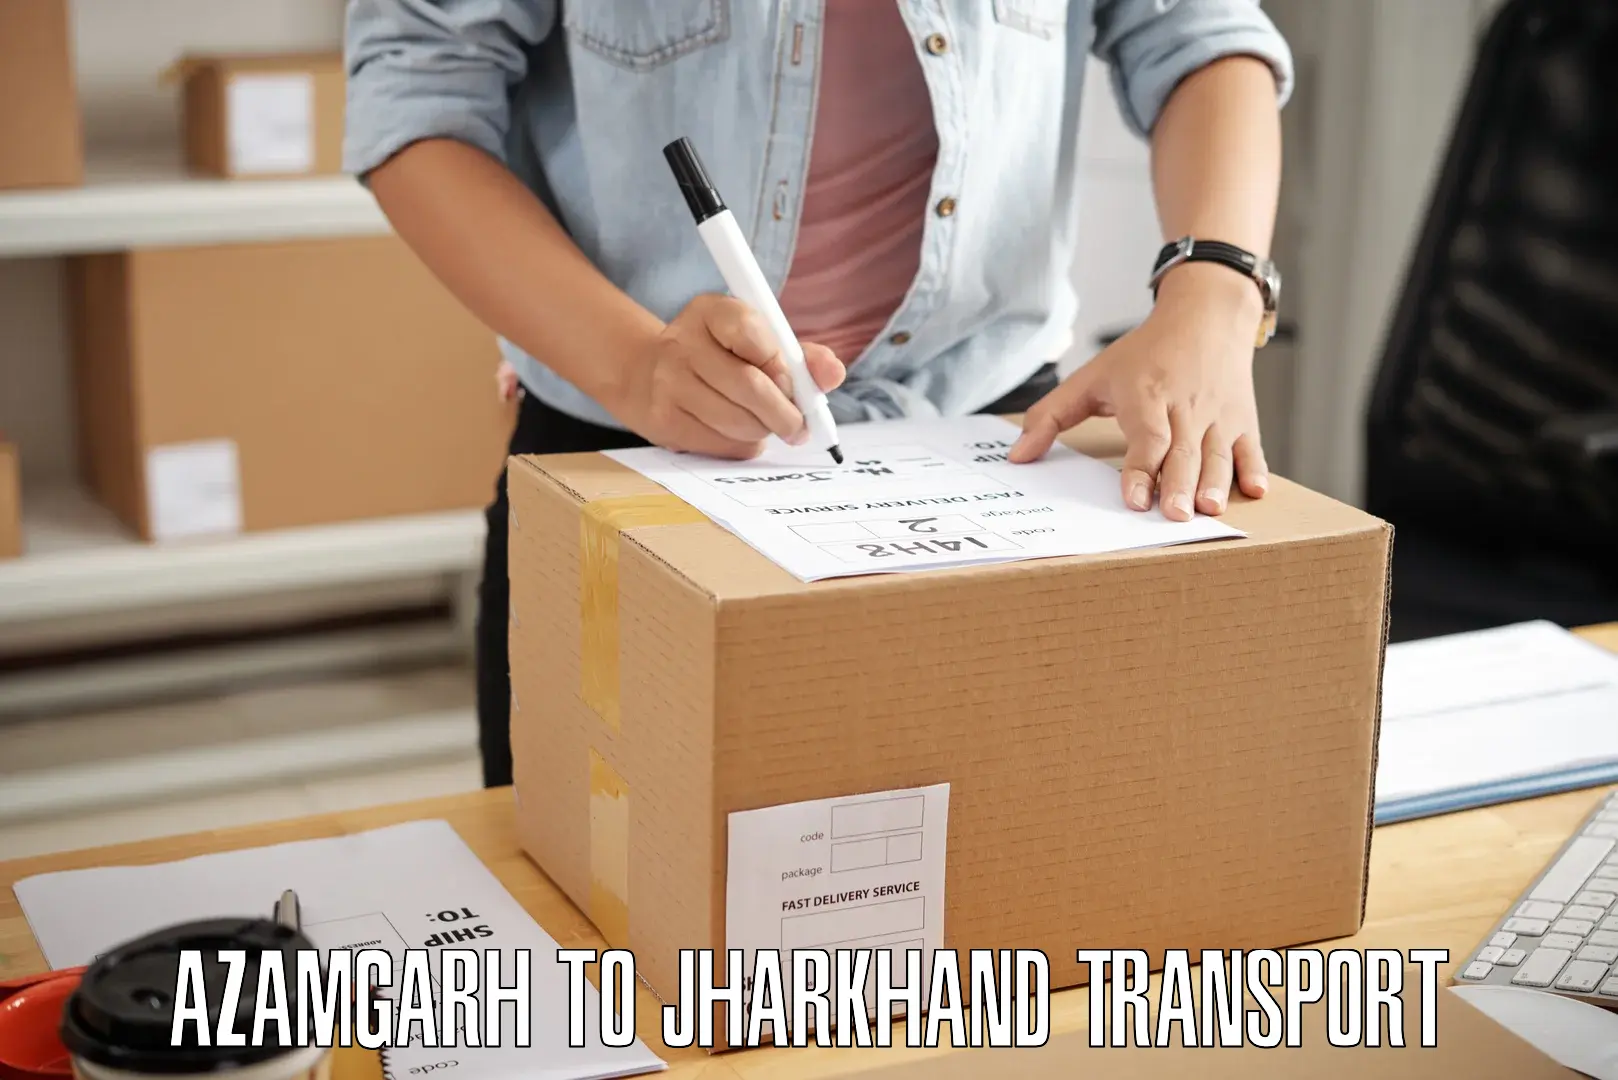 Daily transport service Azamgarh to Jamtara